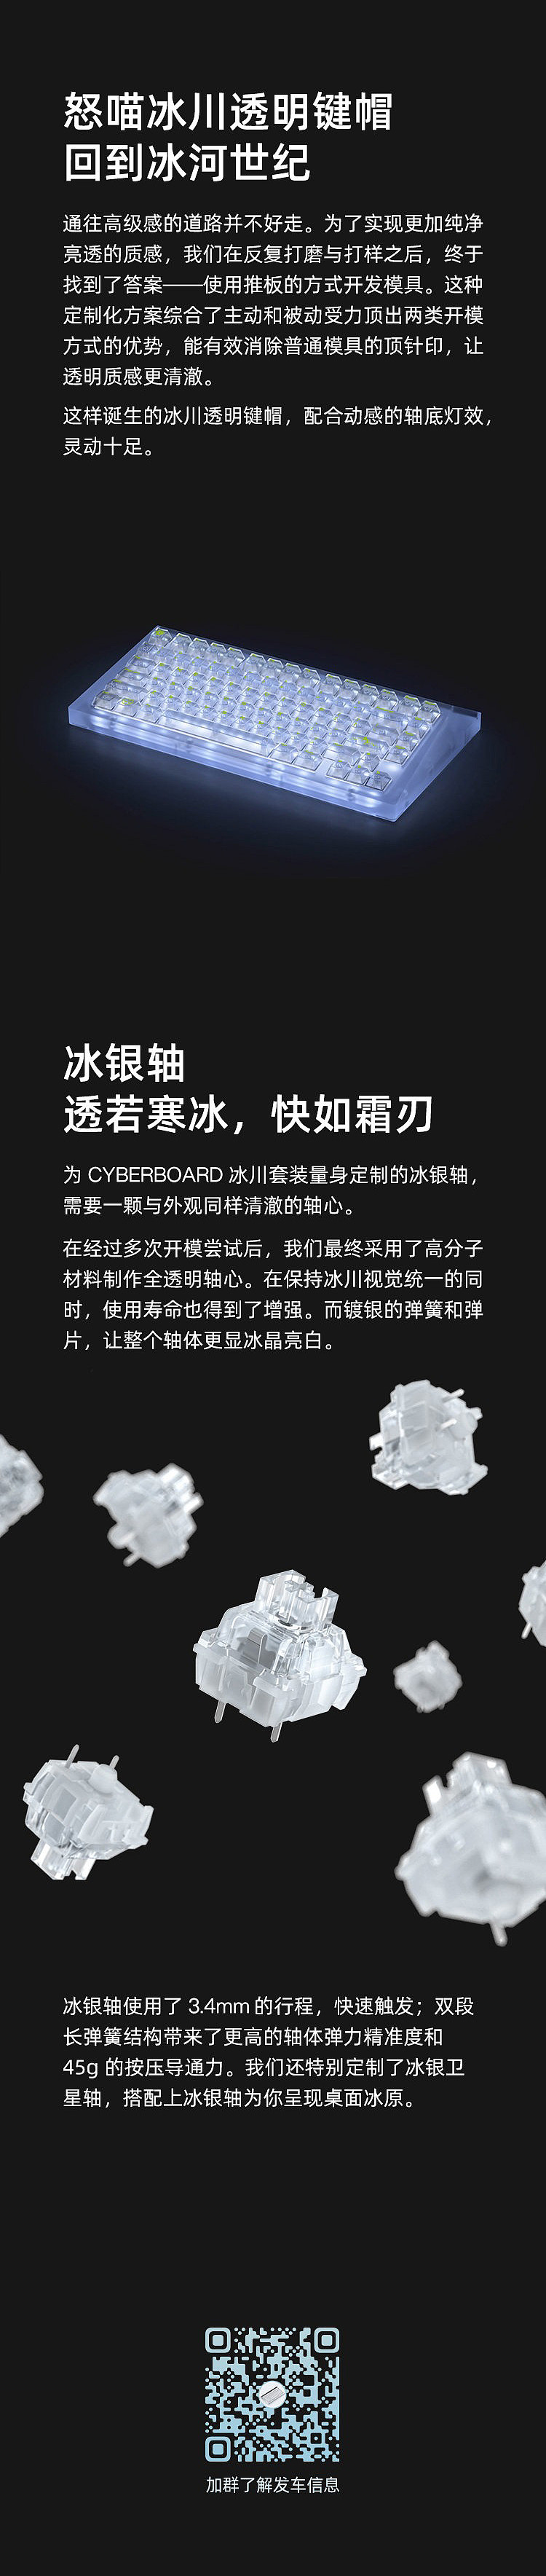 AngryMiao 发布 Cyberboard 冰川套装全透明键盘：3800 元 - 3